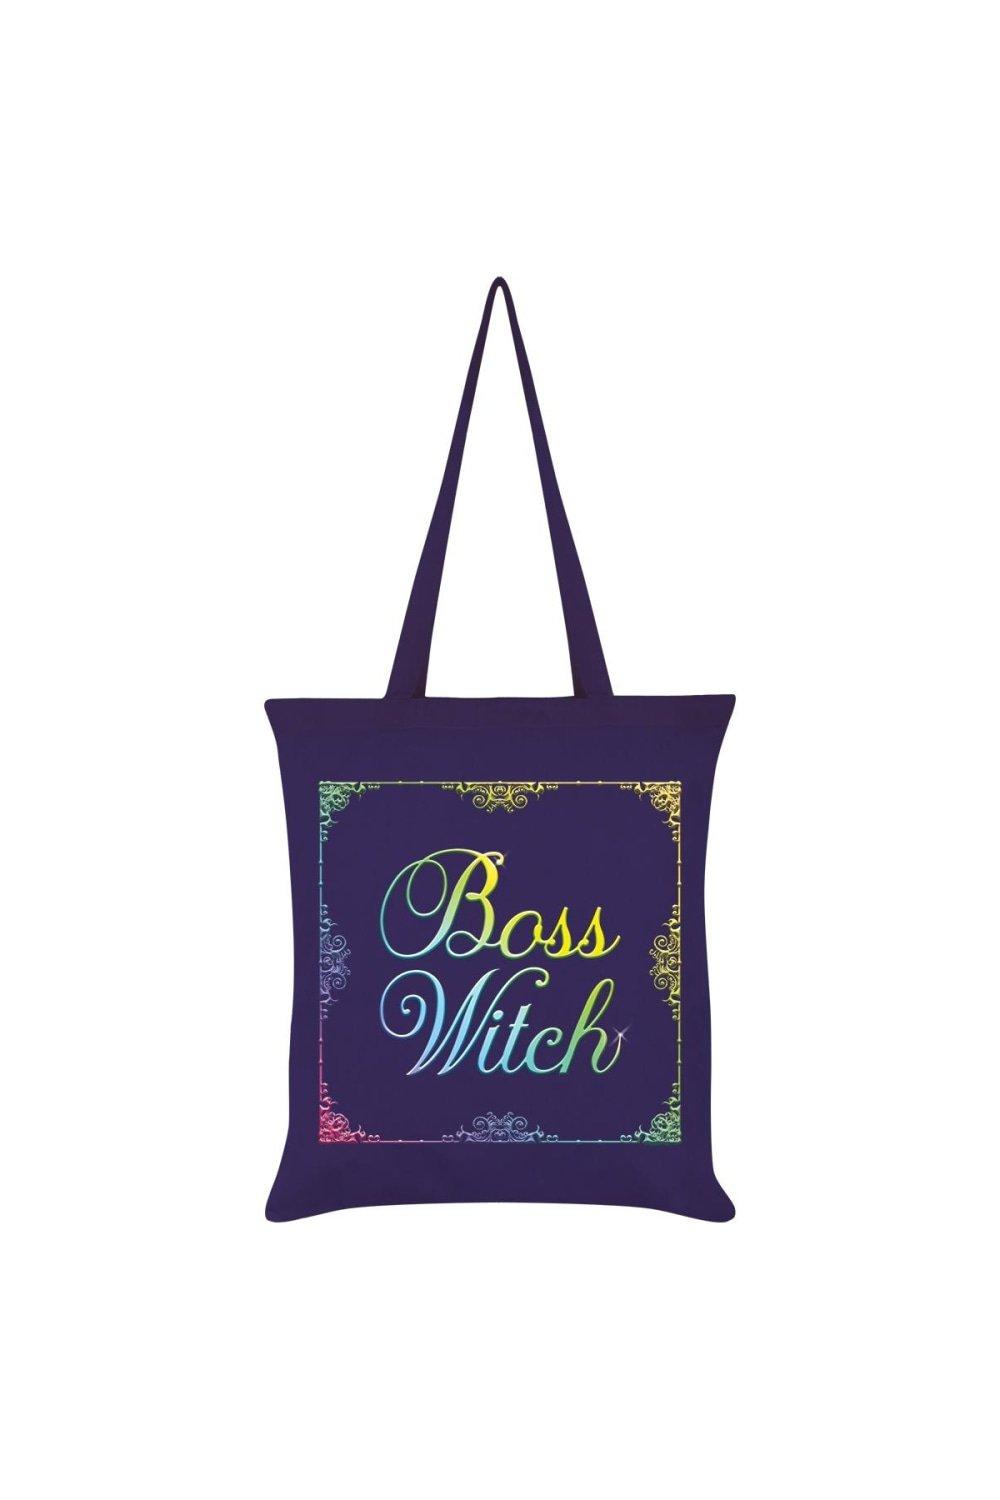 Большая сумка Boss Witch Grindstore, фиолетовый